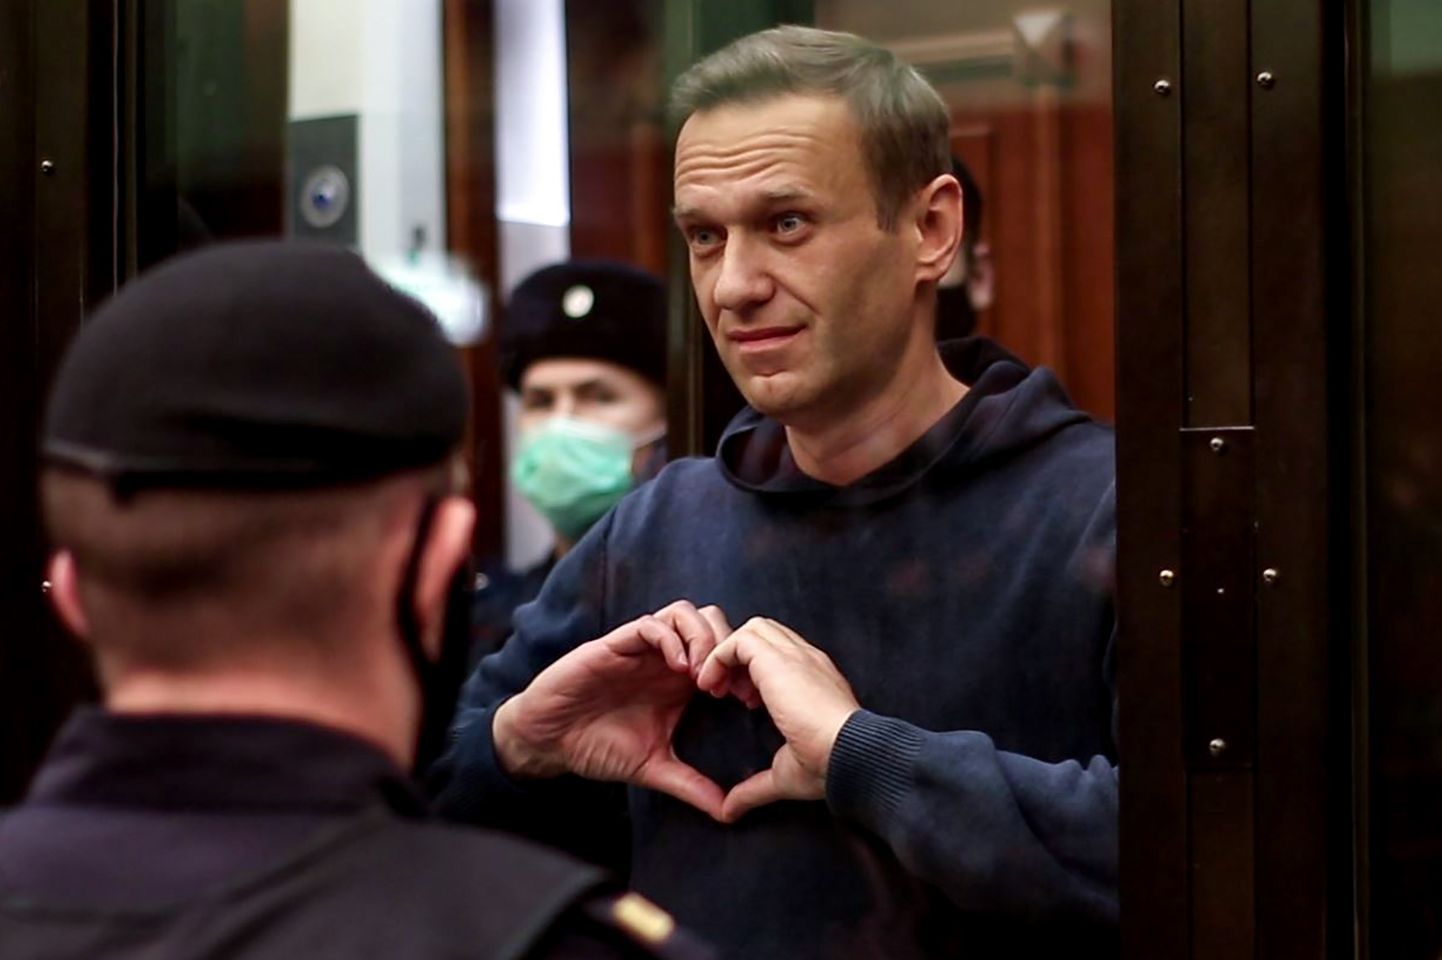 Venemaa opositsioonijuht Aleksei Navalnõi 2. veebruaril 2021 Moskva linnakohtus